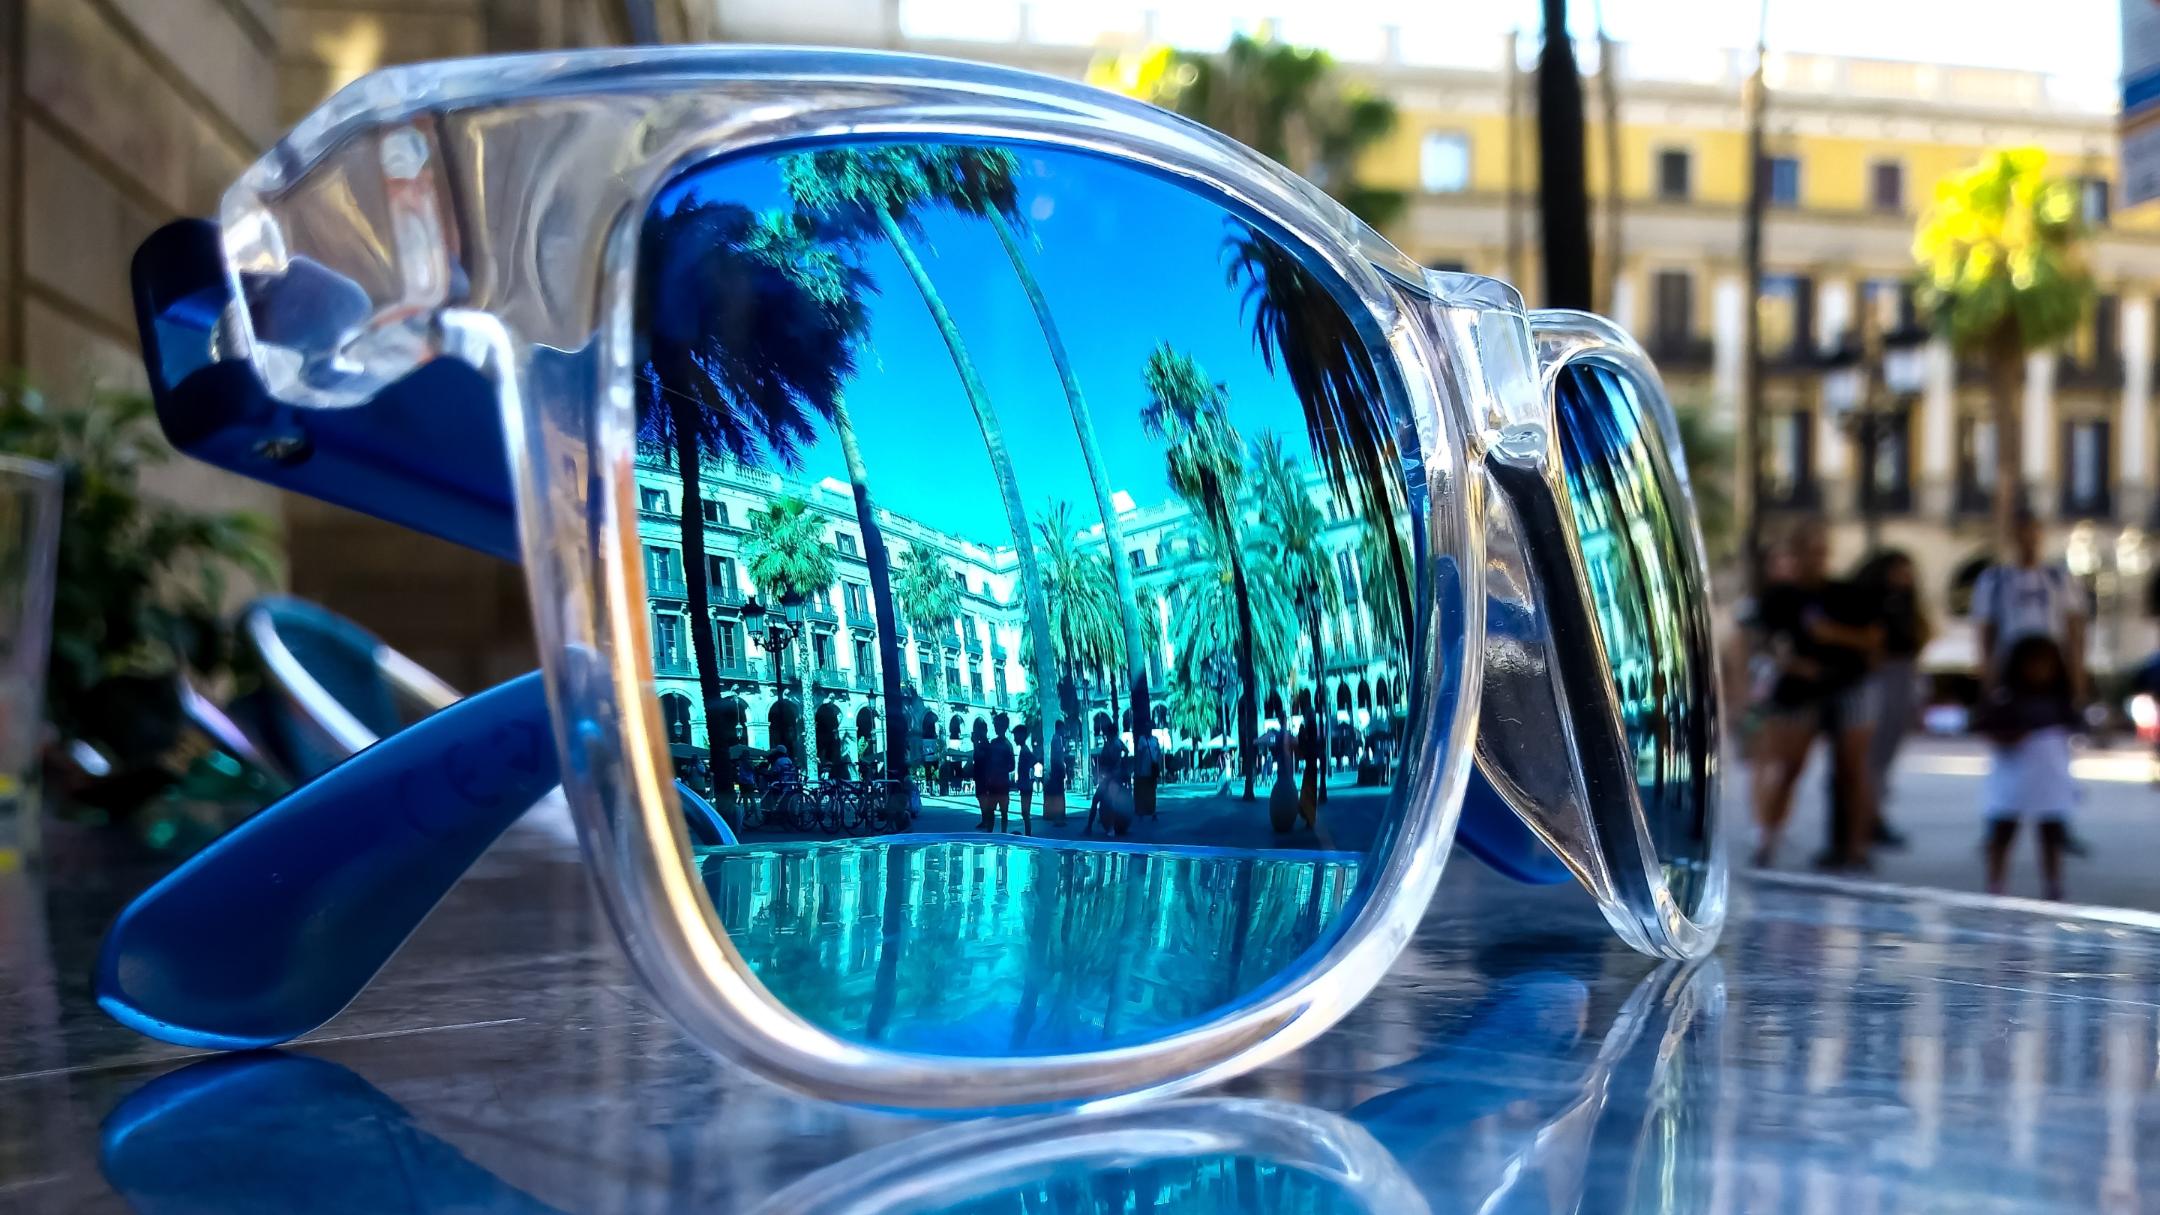 Eine Sonnenbrille liegt draußen auf einem Glastisch. In ihr spiegeln sich Palmen, Häuser und Menschen bei blauem Himmel.